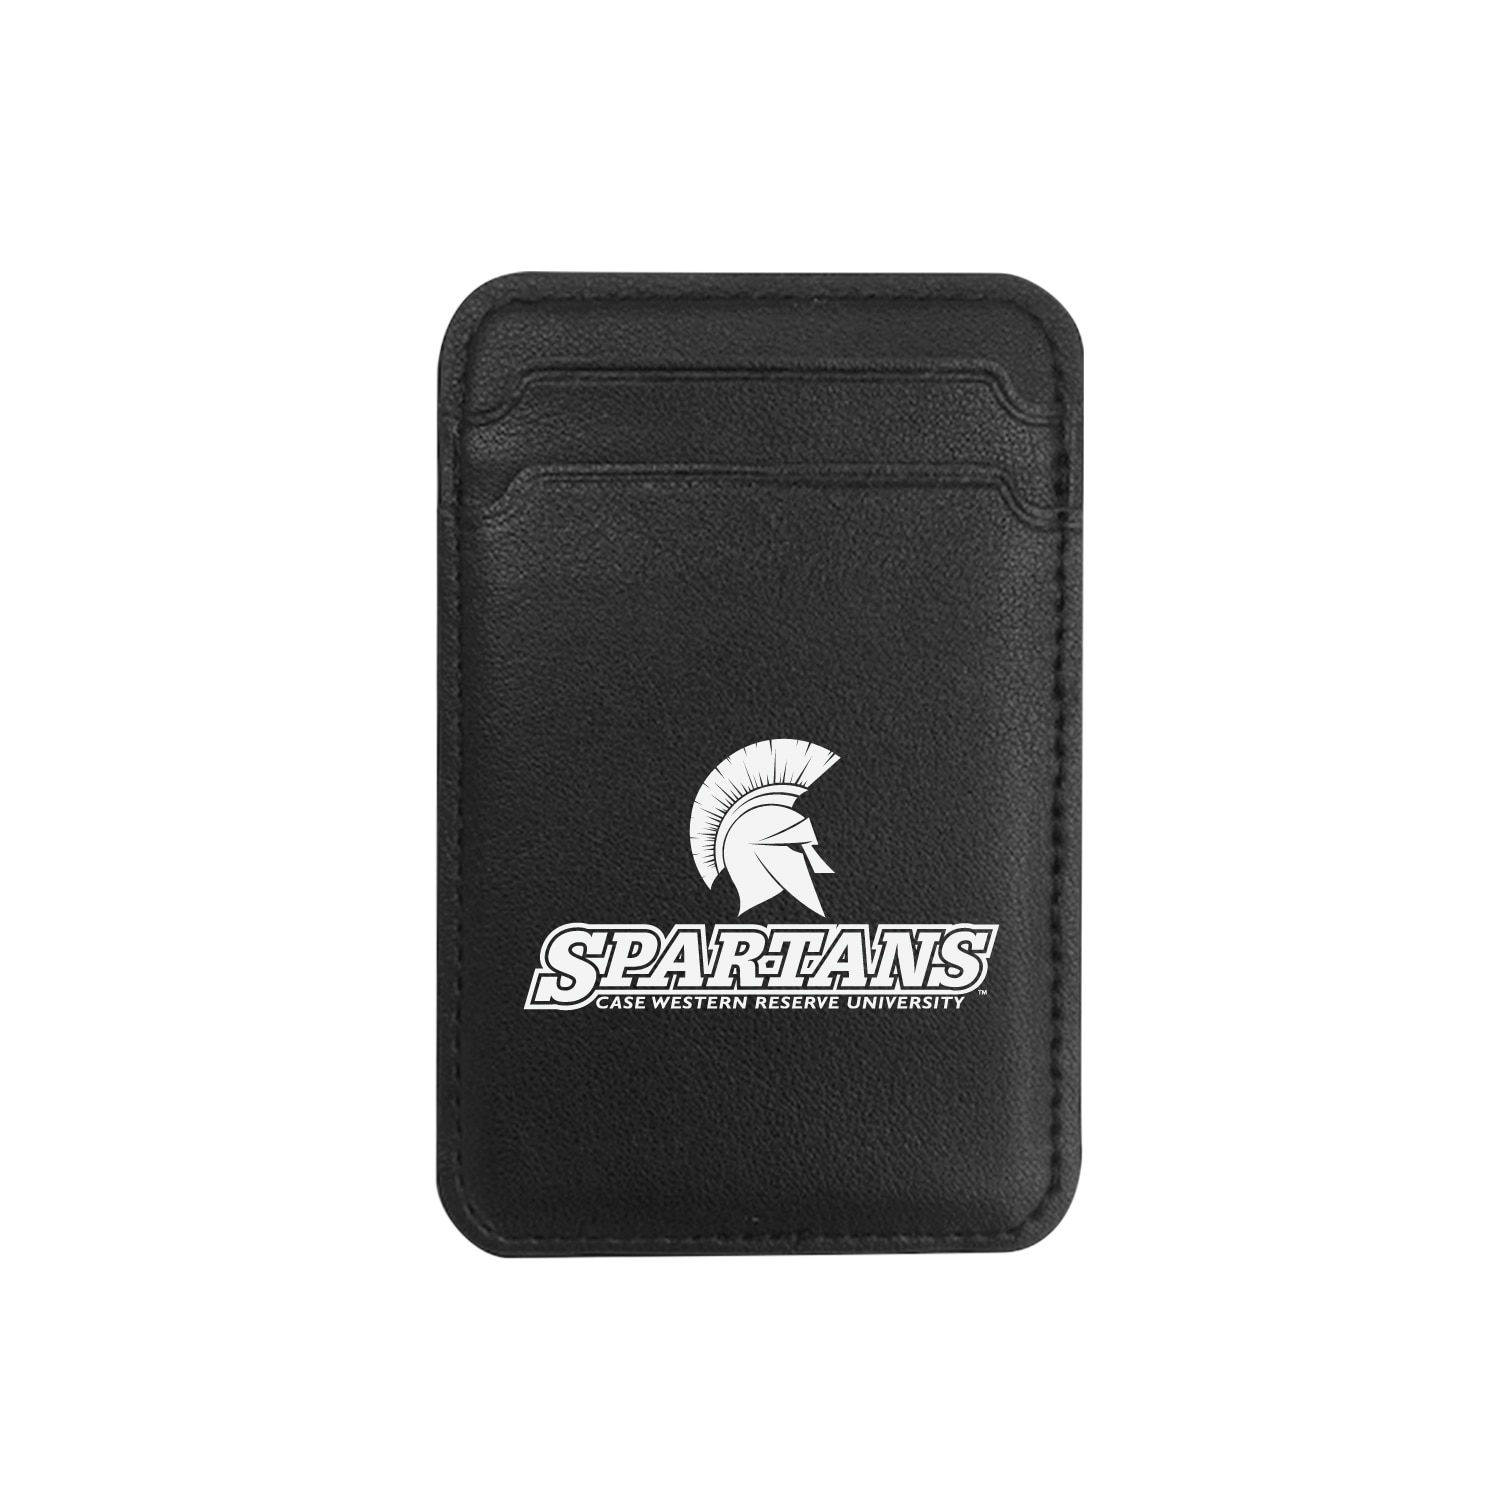 Case Western Reserve University - Leather Wallet Sleeve (Top Load, Mag Safe), Black, Classic V1